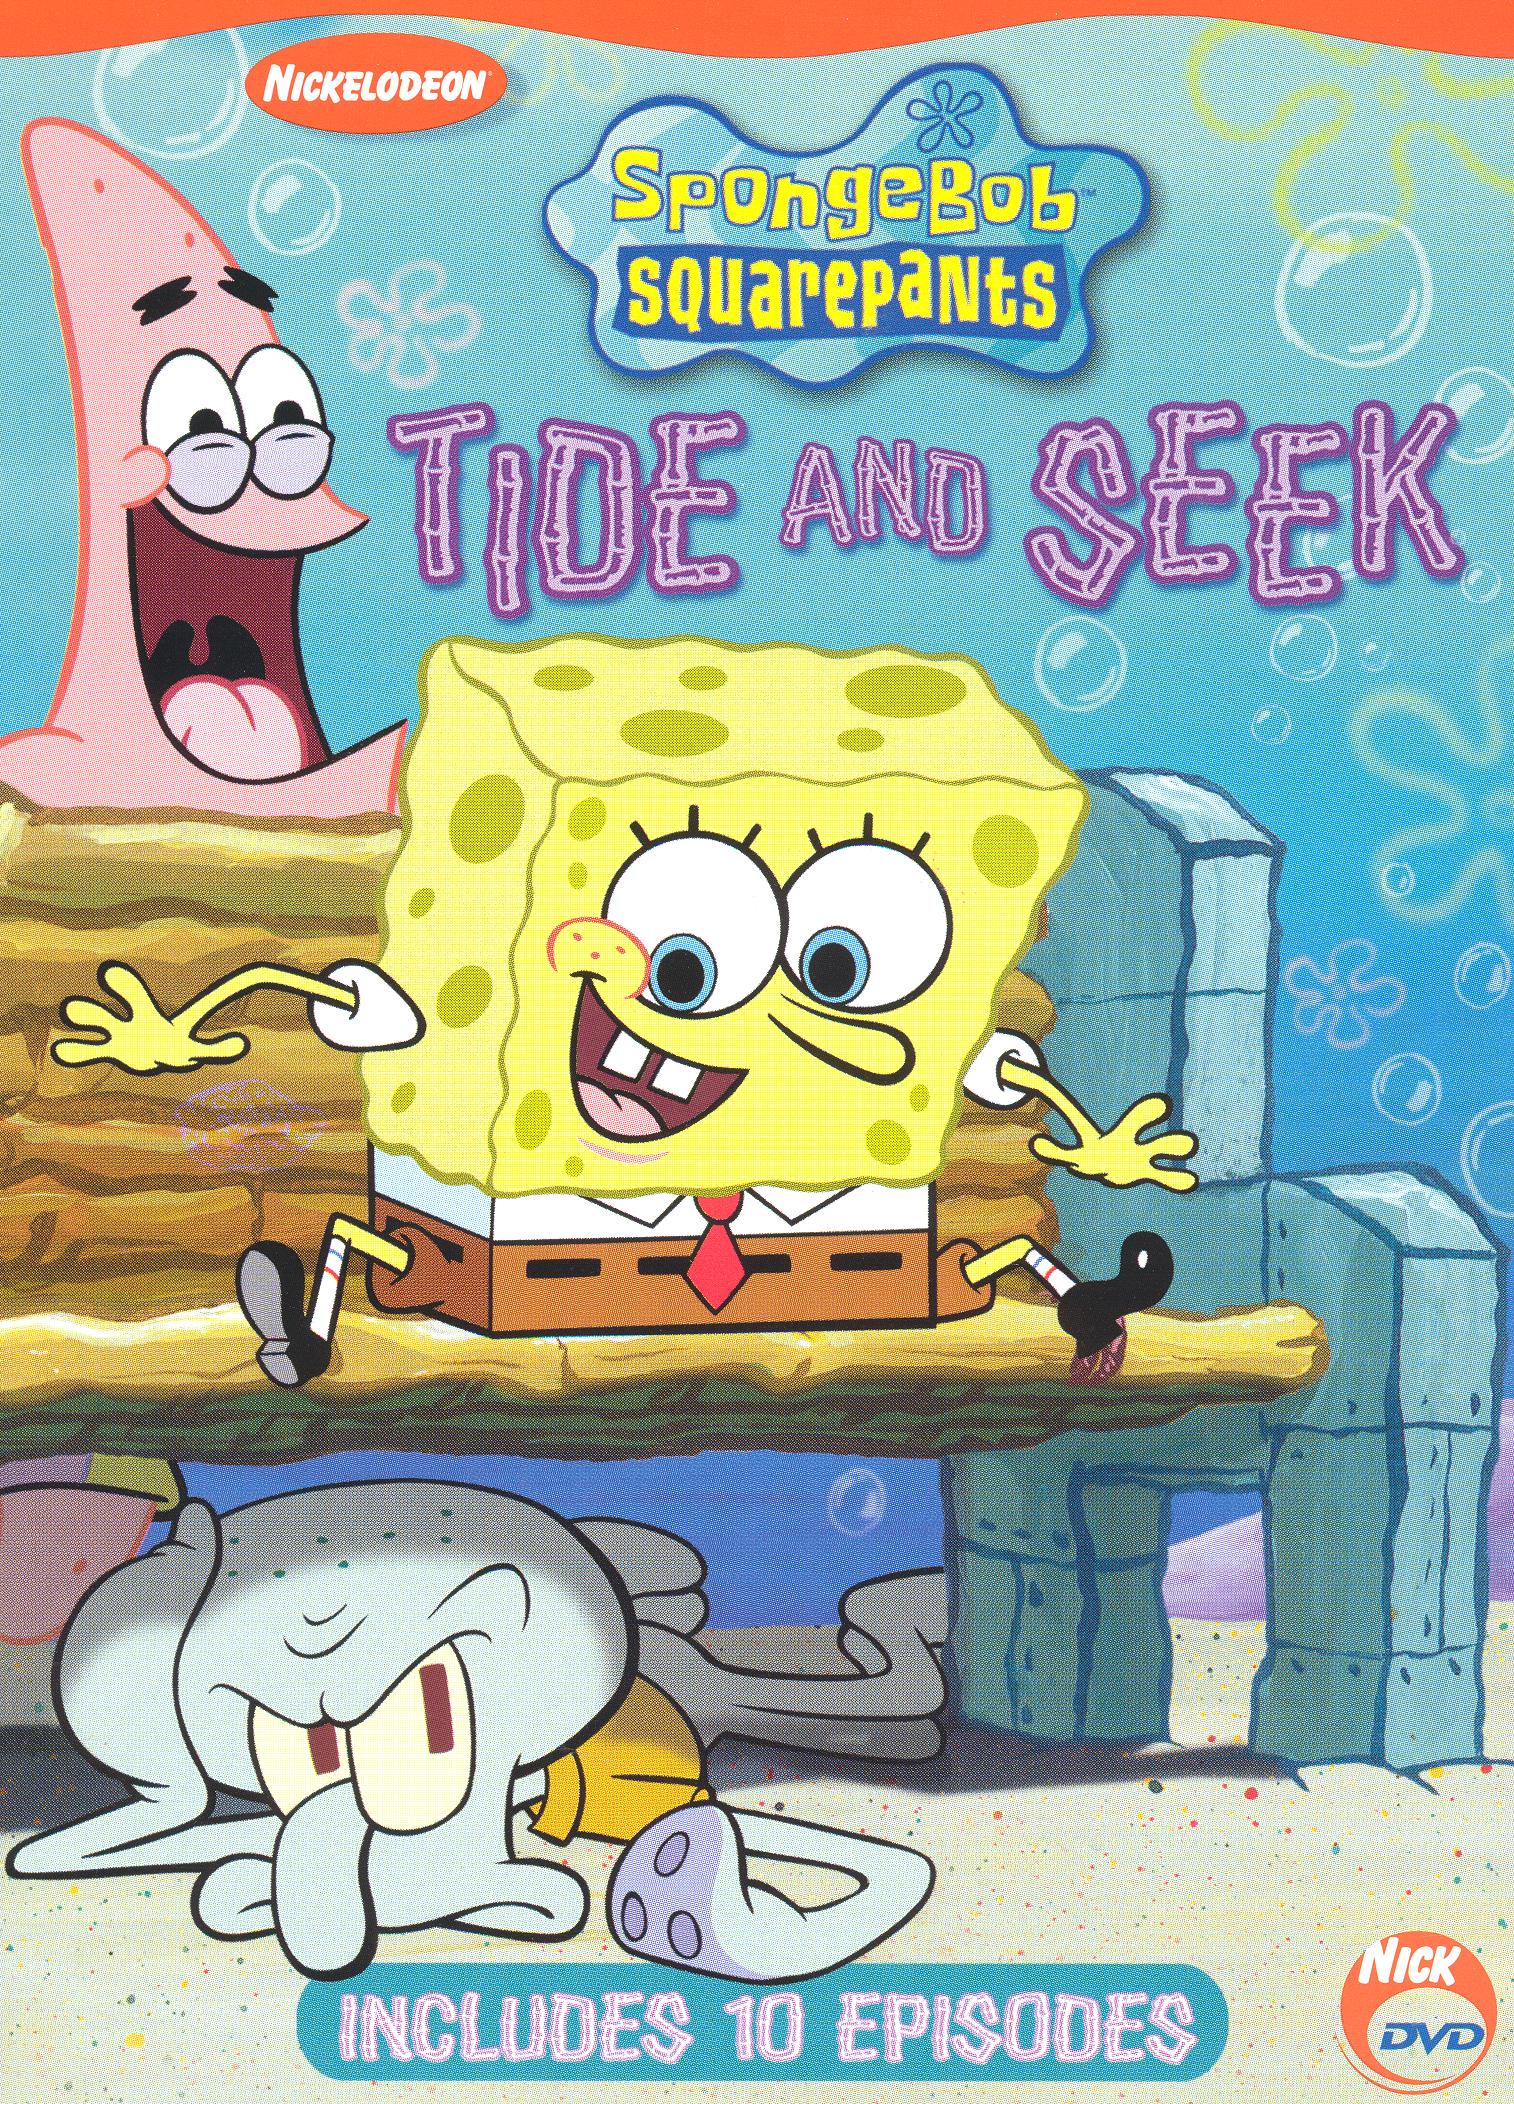 SpongeBob SquarePants - Tide and Seek movie